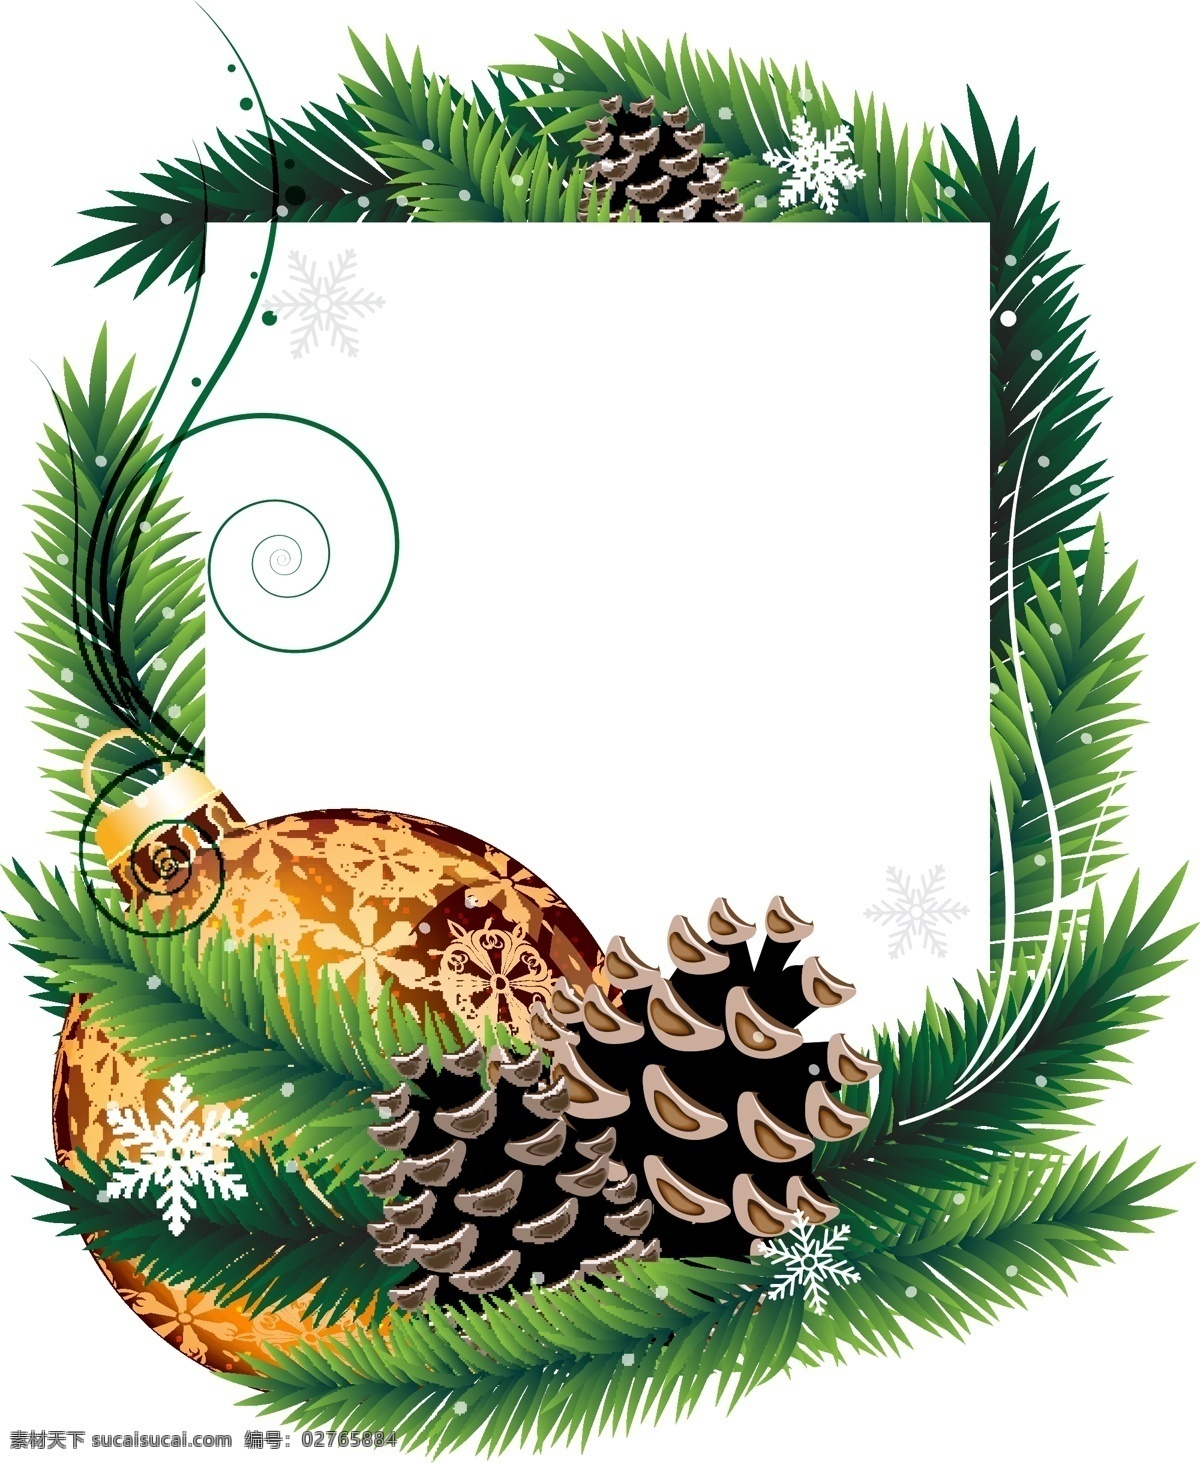 圣诞节 新年背景 绿色松树枝 圣诞球 松果 圣诞装饰素材 圣诞节海报 2015 年 新年 羊年 矢量 文化艺术 节日庆祝